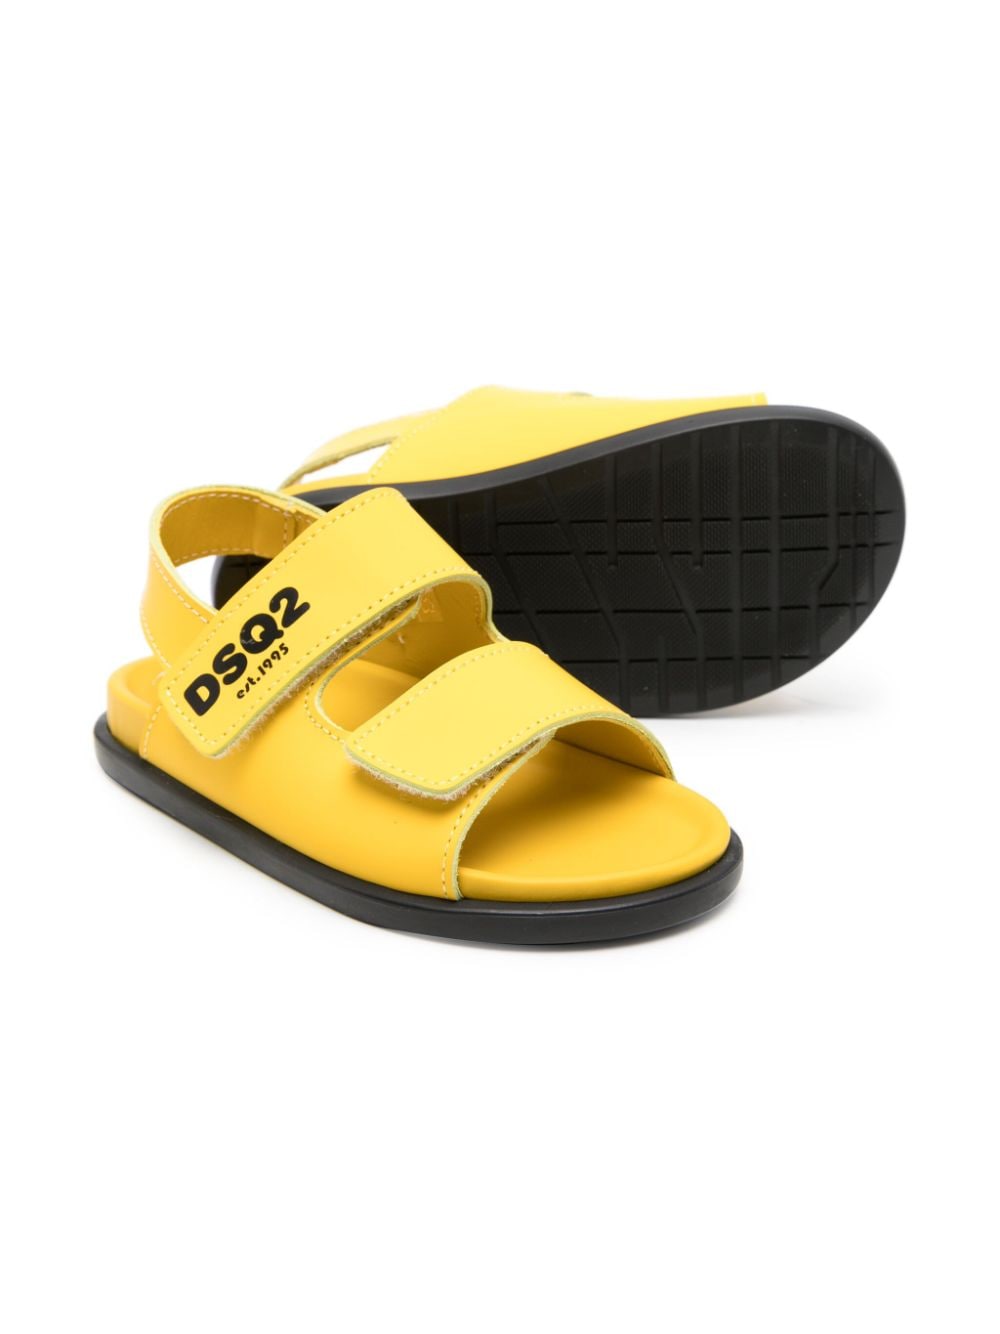 Sandales enfant jaune/noir